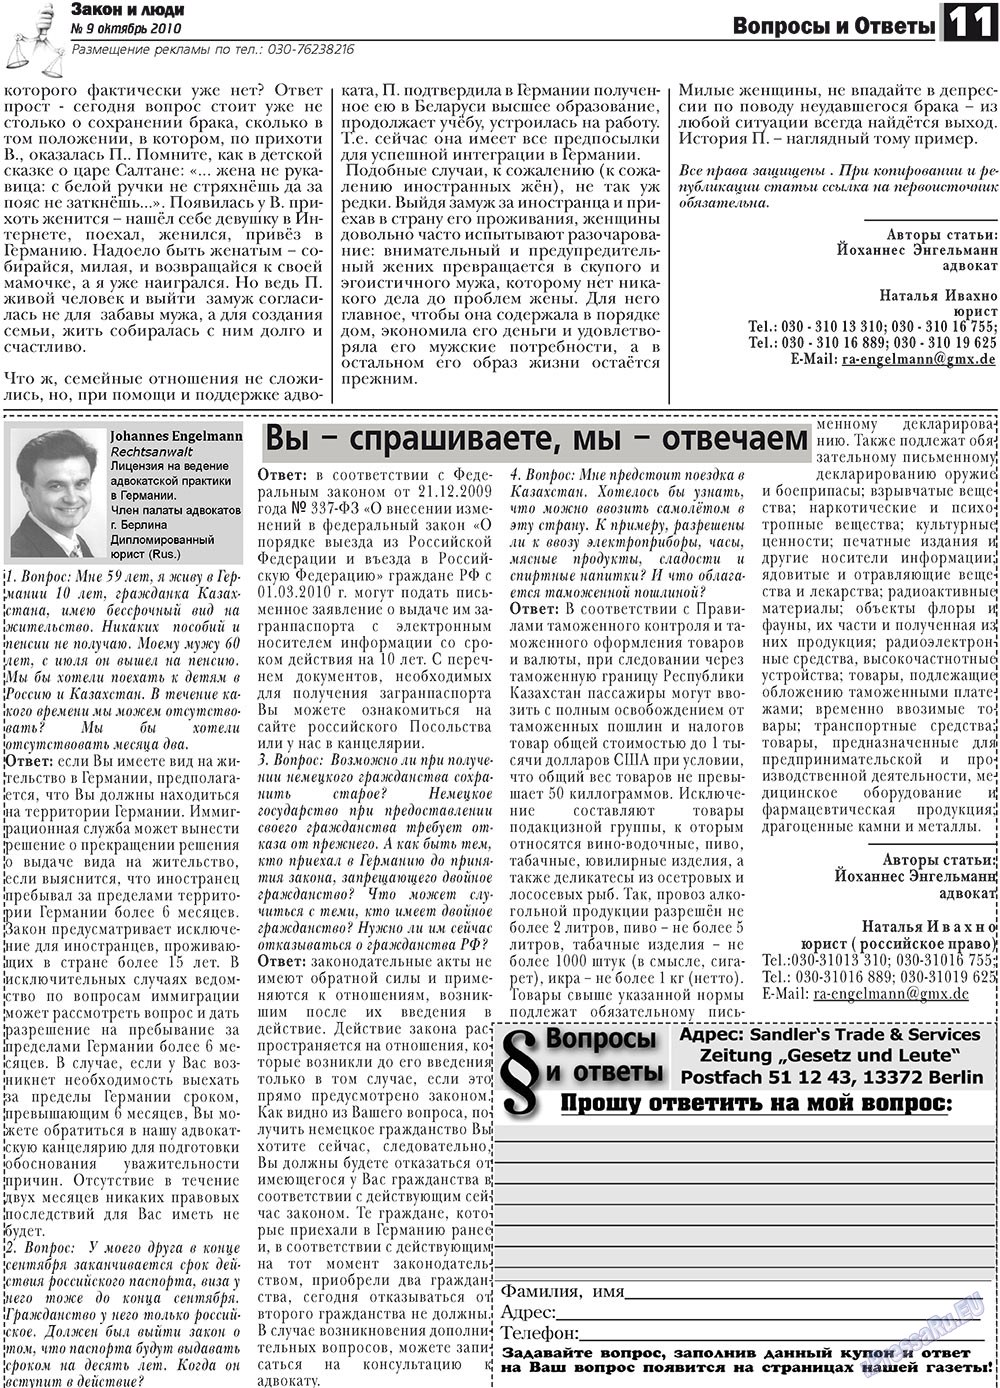 Закон и люди, газета. 2010 №9 стр.11